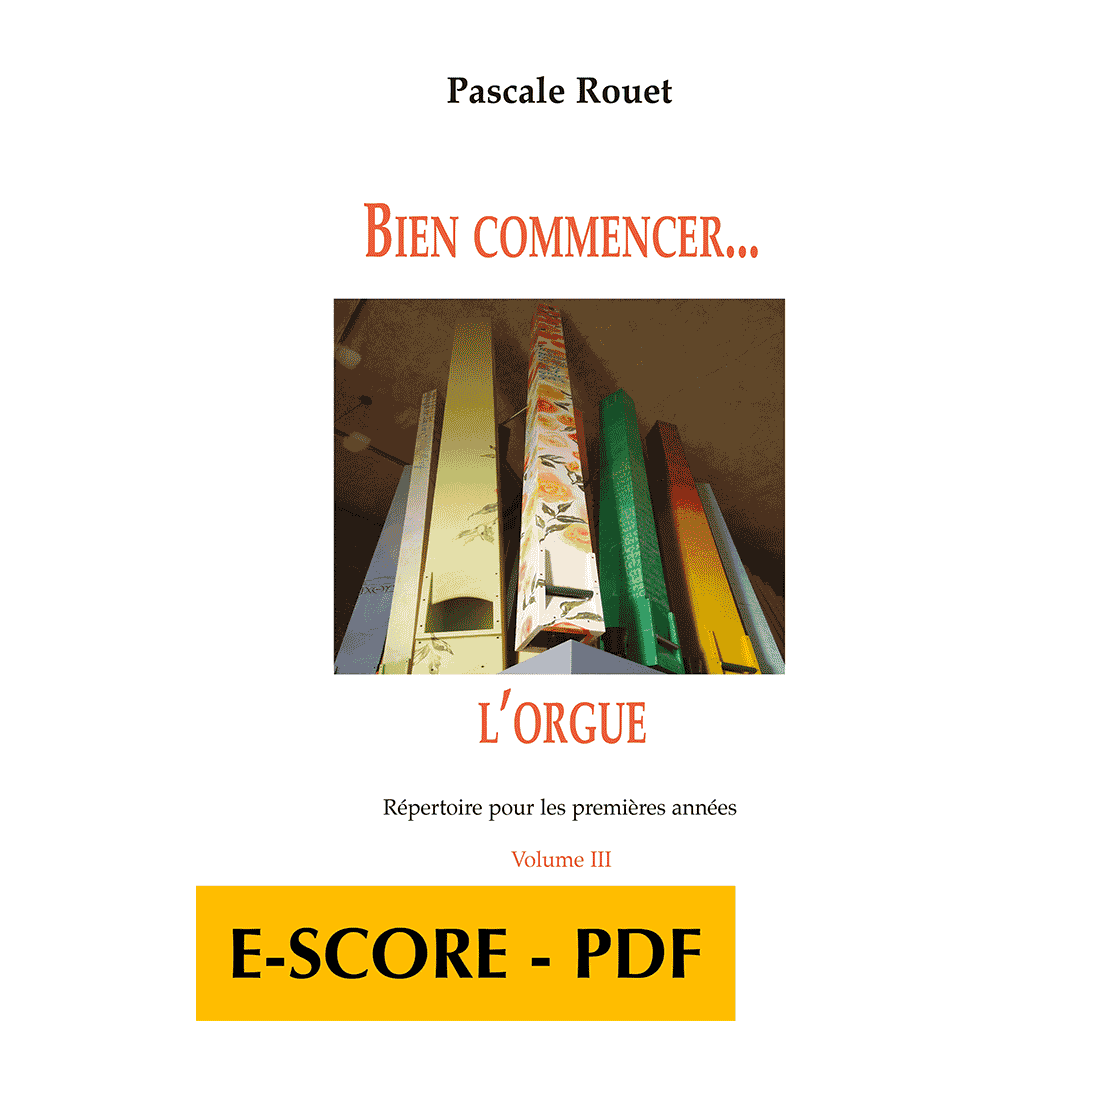 Bien commencer l'orgue - Répertoire pour les premières années - Band 3 - E-score PDF